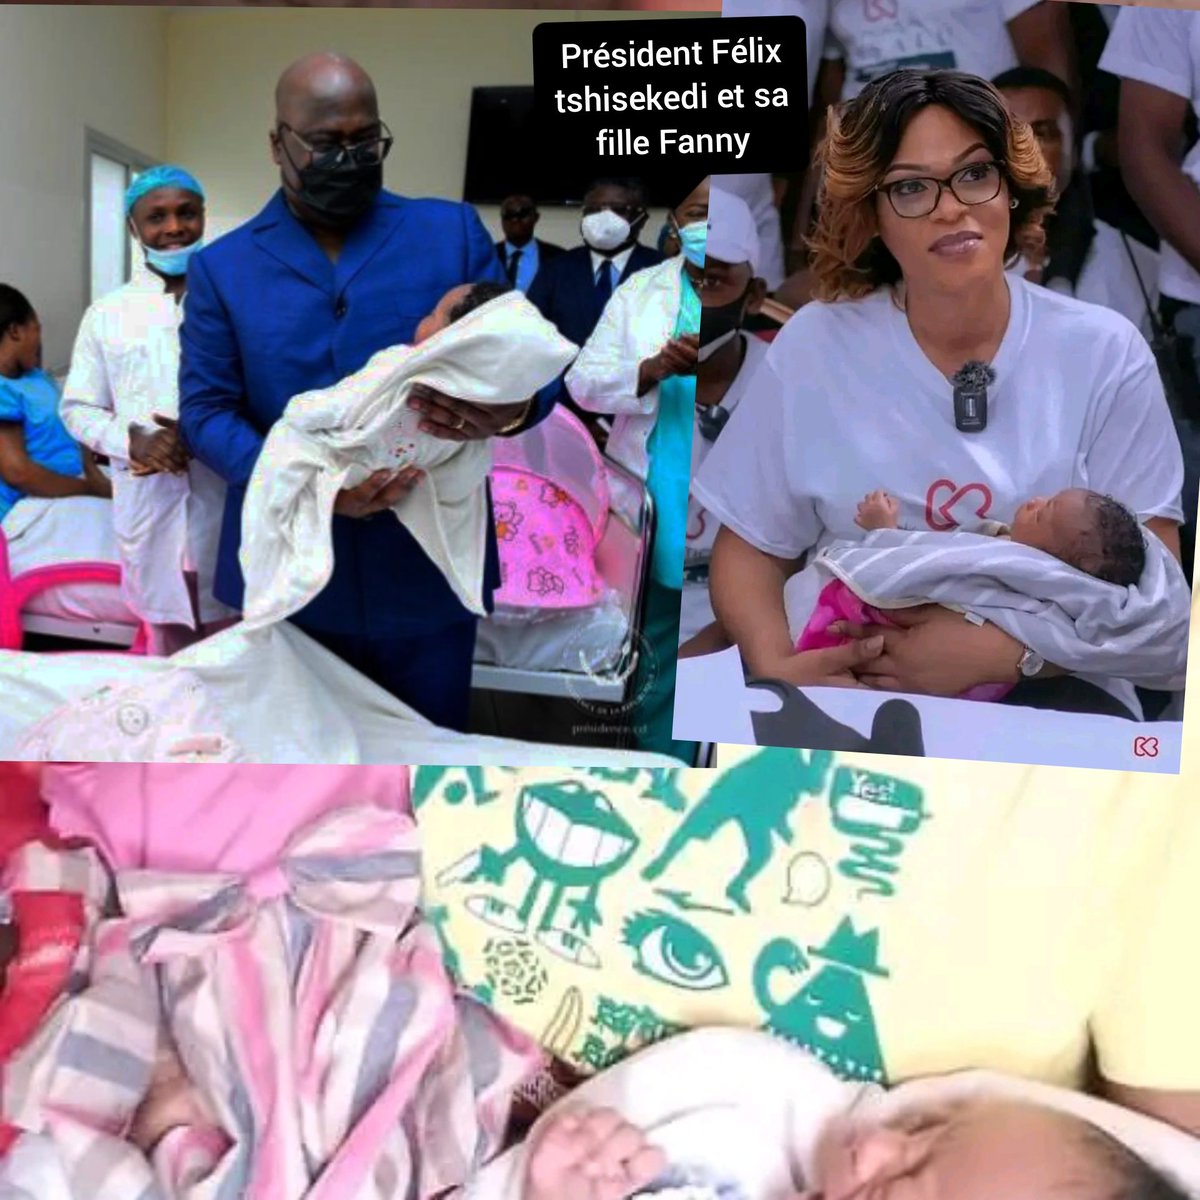 RDC : le président Félix tshisekedi tshilombo et sa fille Fanny tshisekedi souhaitent la maternité gratuite pour les Les nouveaux congolais et congolaises